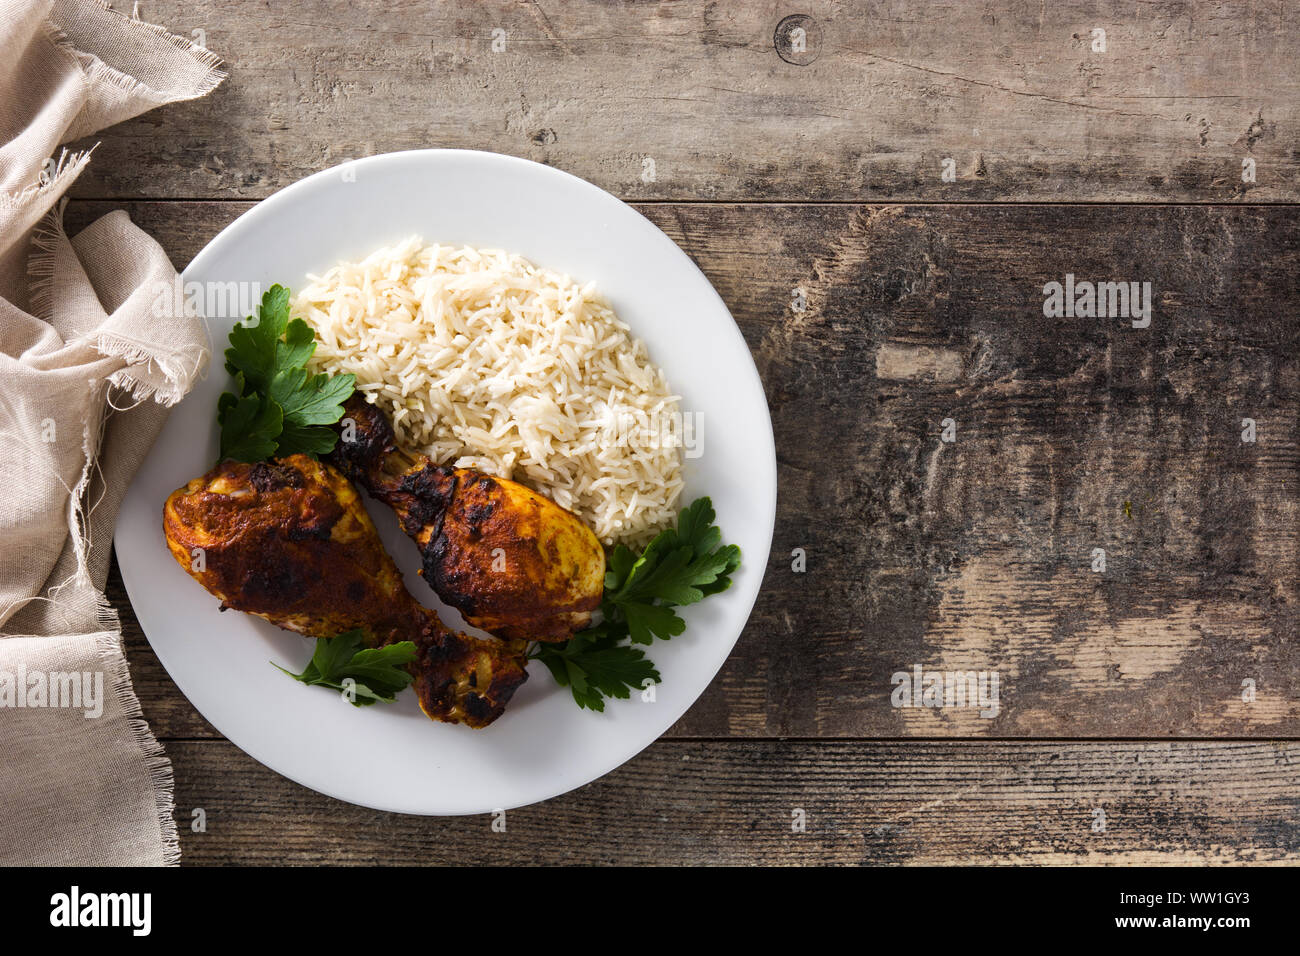 Poulet tandoori grillés avec du riz basmati en plaque sur les tables en bois. Vue d'en haut. Copy space Banque D'Images